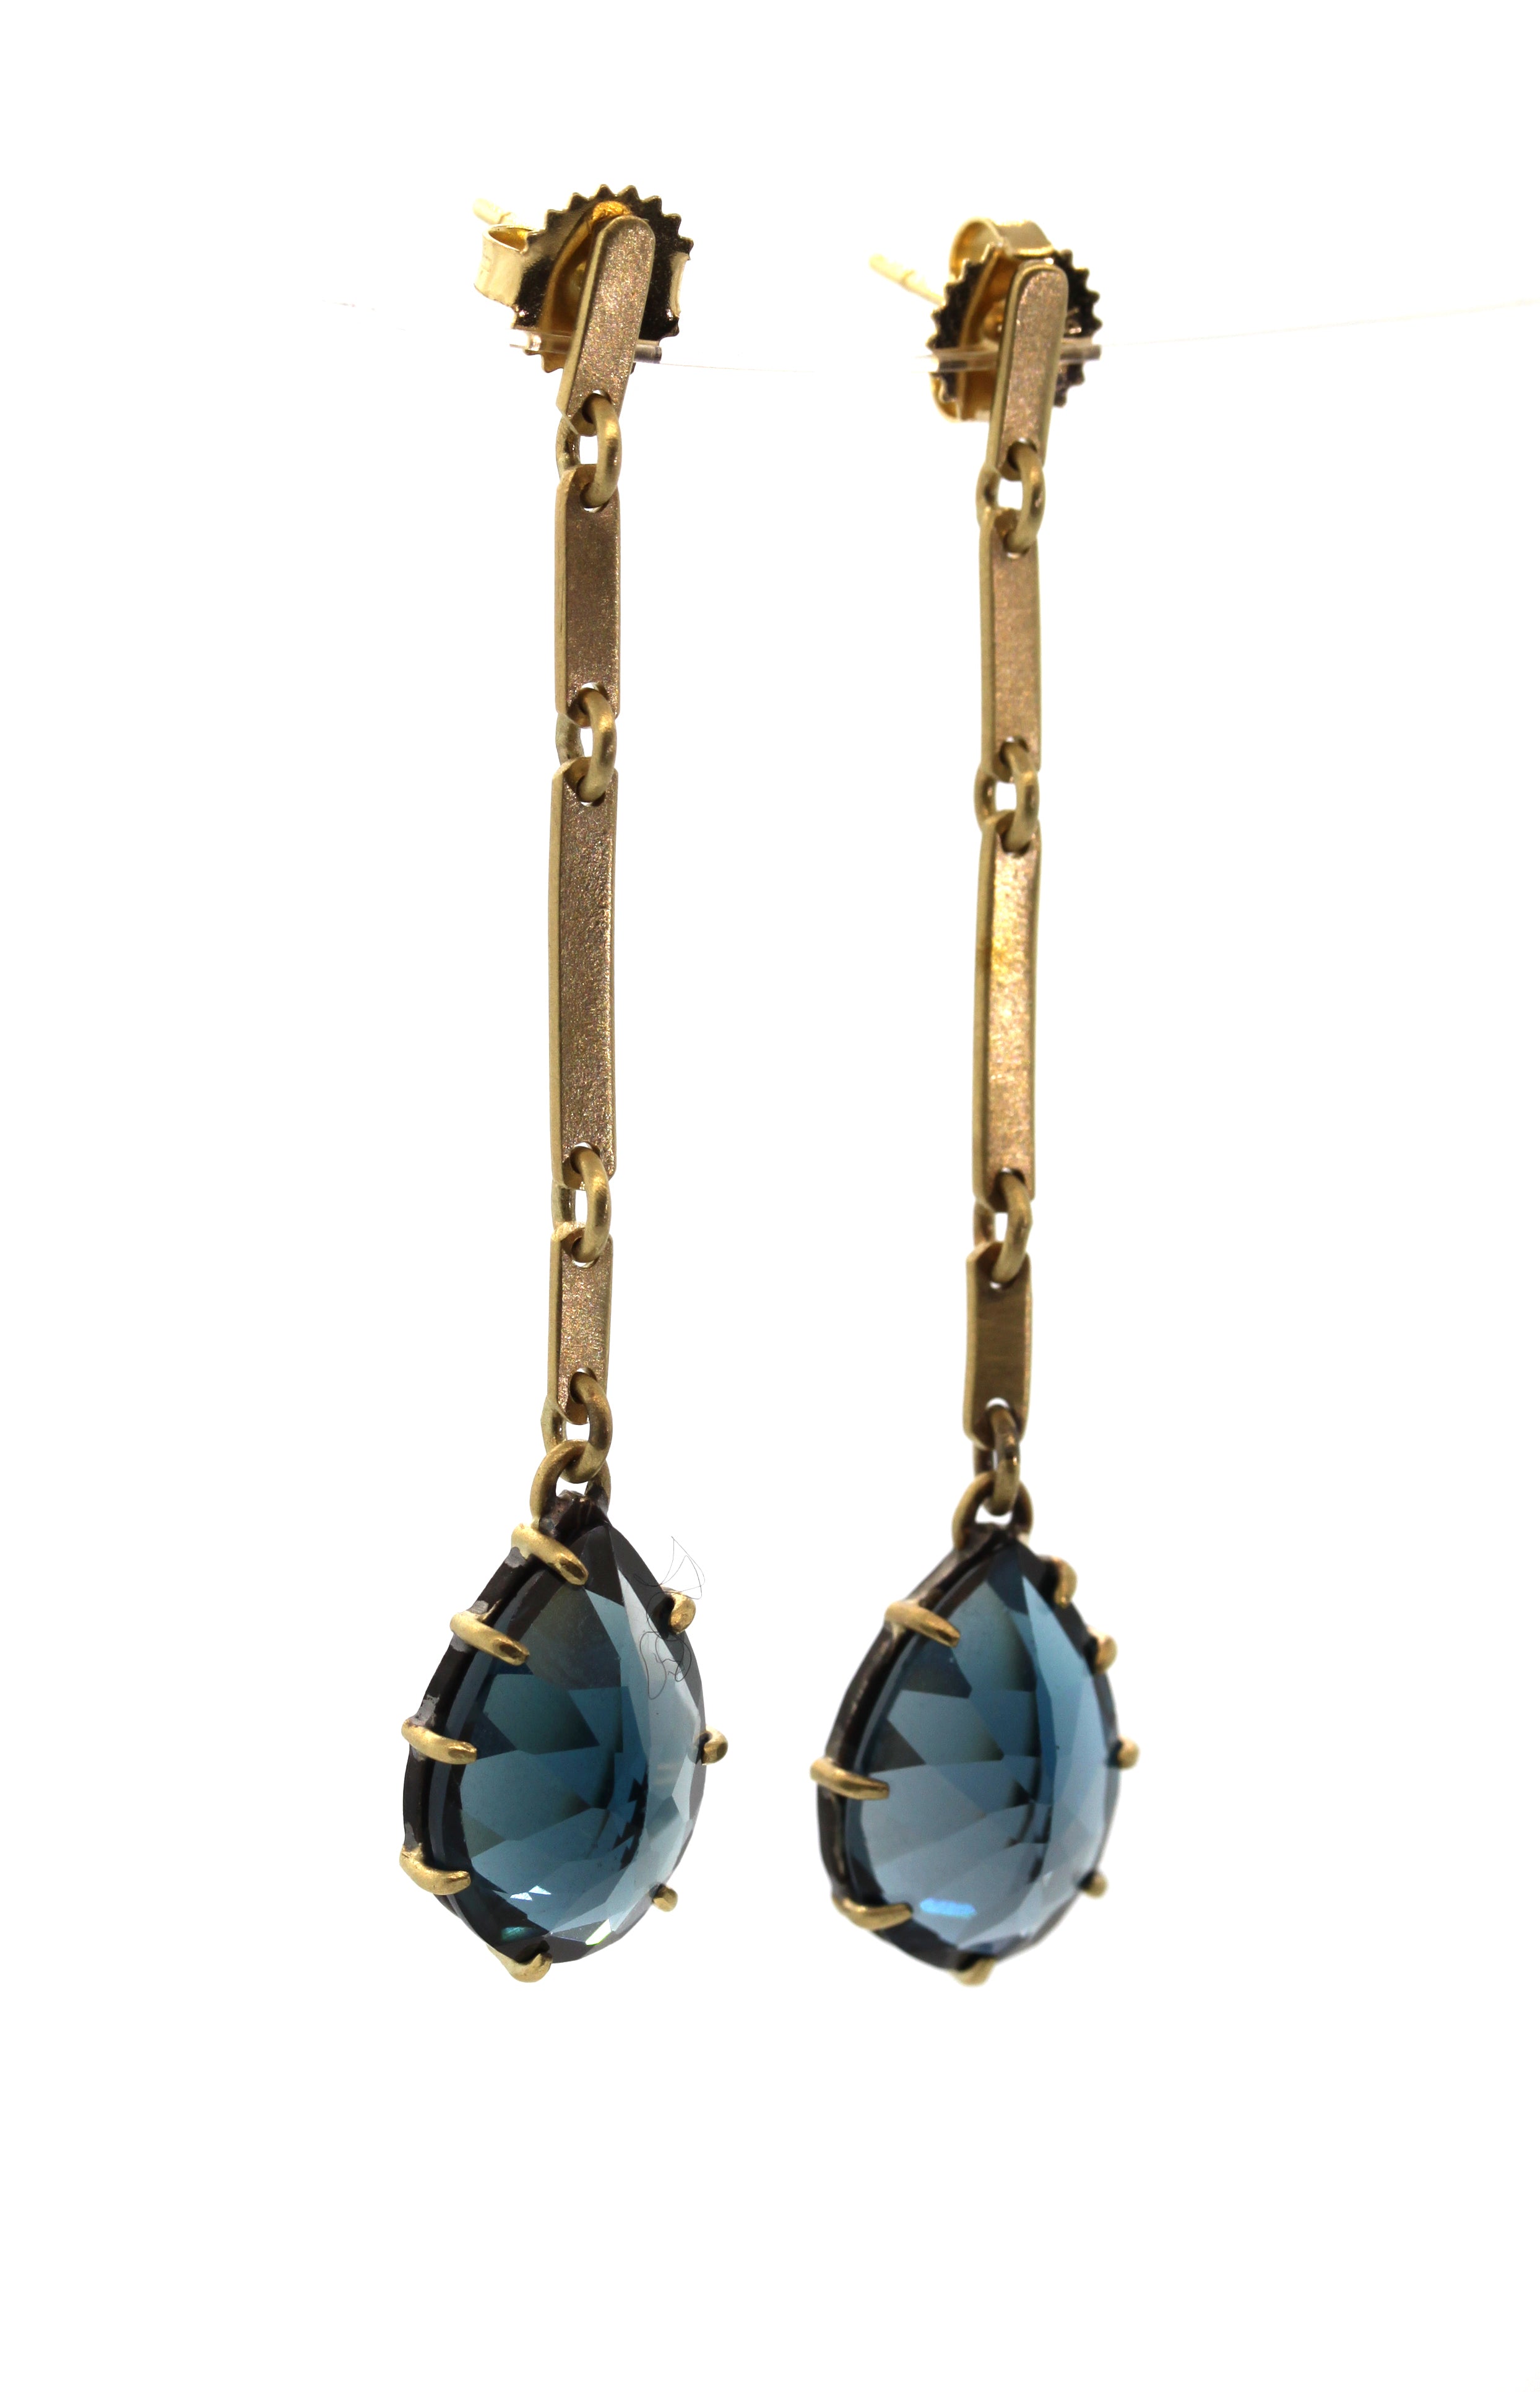  London Blue Topaz Bar Earrings, dangle earrings, gemstone jewelry, rebecca lankford designs, houston